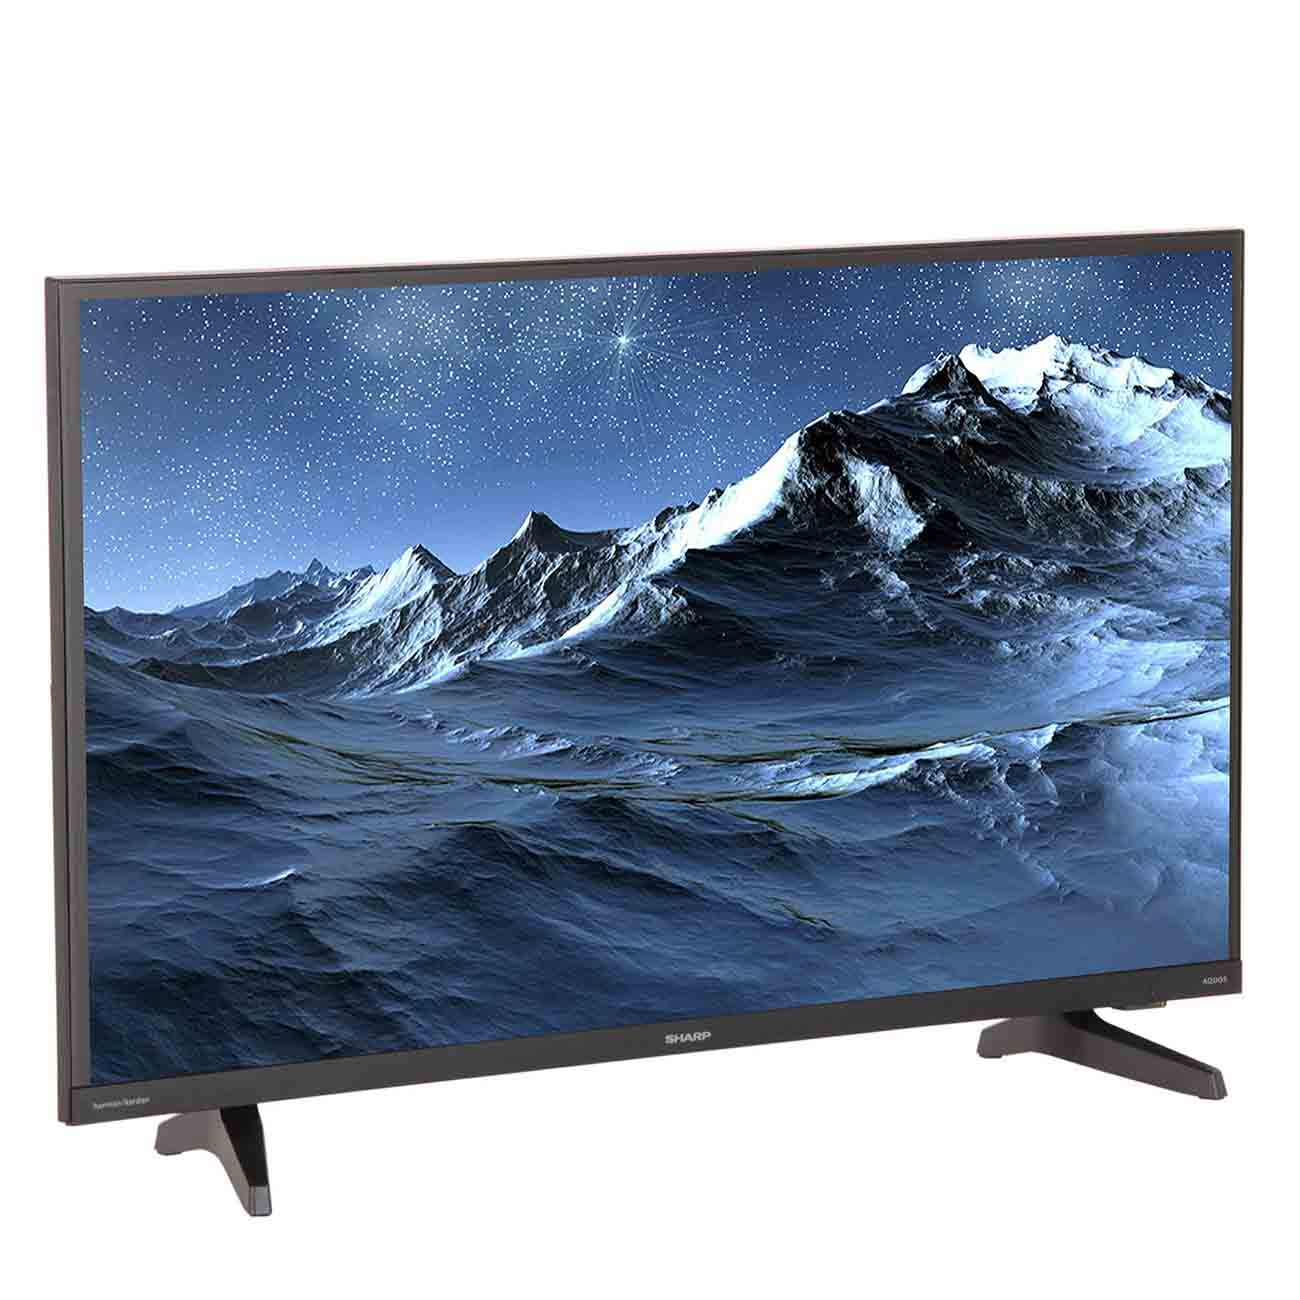 М видео купить телевизор 32. Sharp LC-55cug8052e 55. Телевизор Sharp aquos 65 дюймов. Телевизор Sharp aquos 50 дюймов. Телевизор Sharp aquos 43 дюйма.